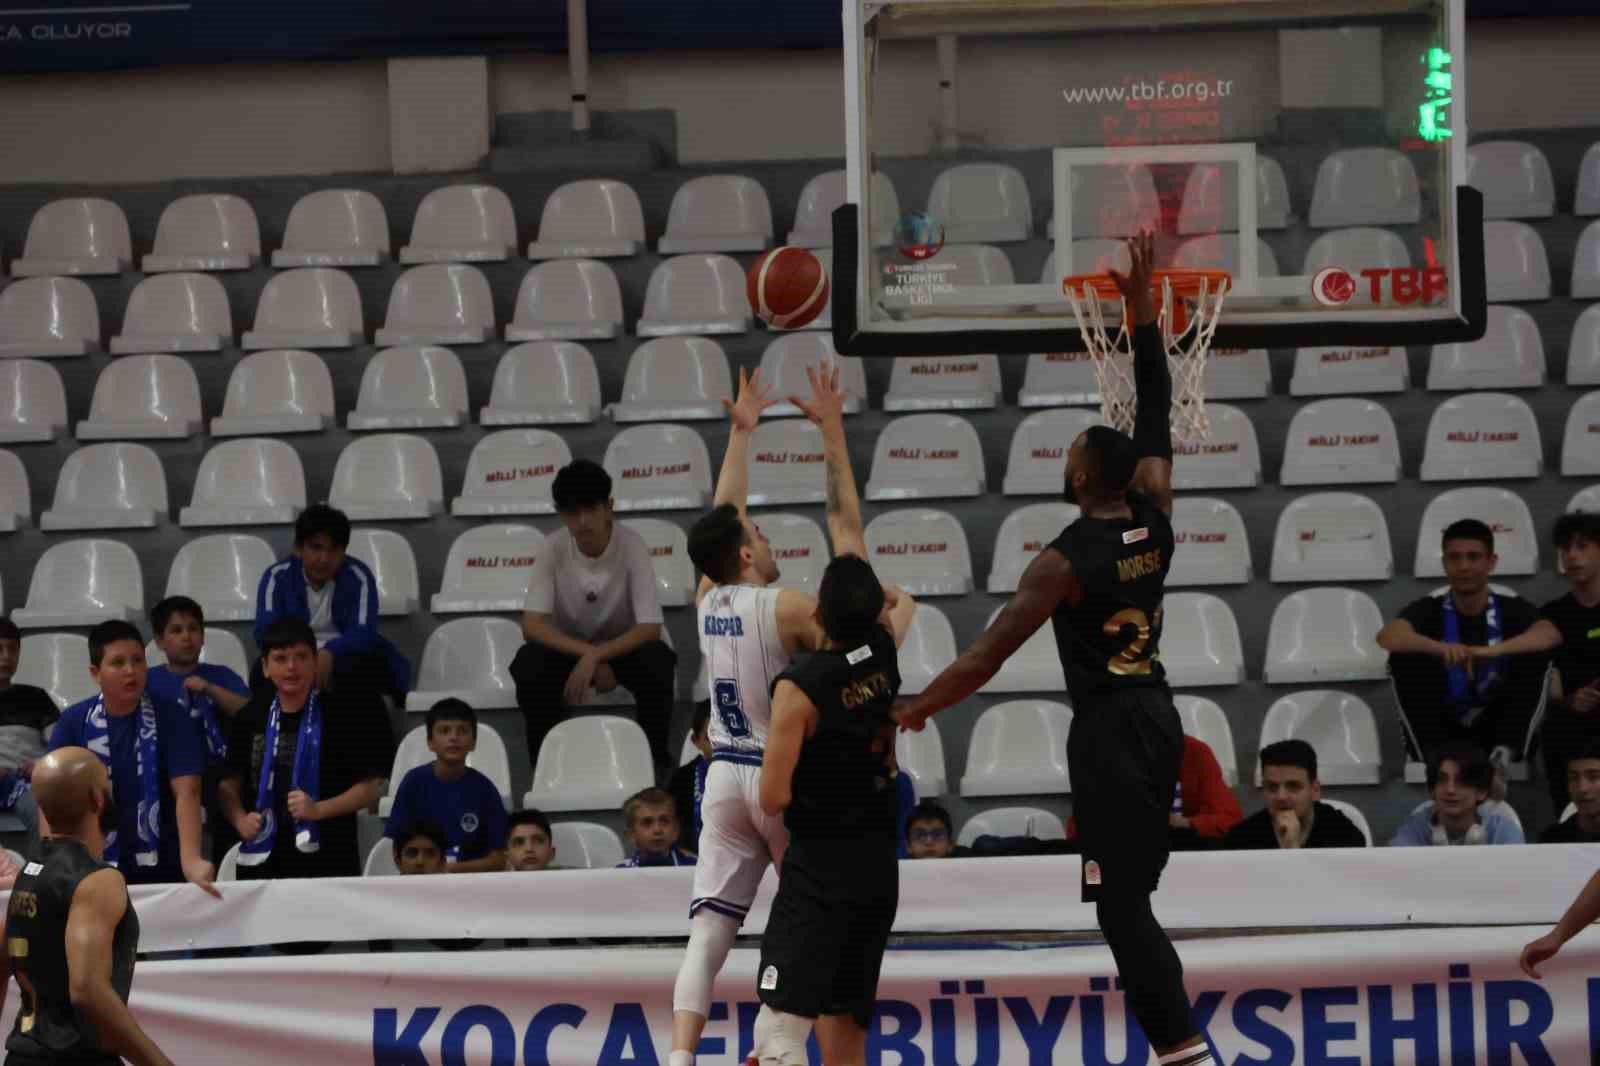 Türkiye Basketbol Ligi: Kocaeli Büyükşehir Belediye Kağıtspor: 82 - Esenler Erokspor: 85
